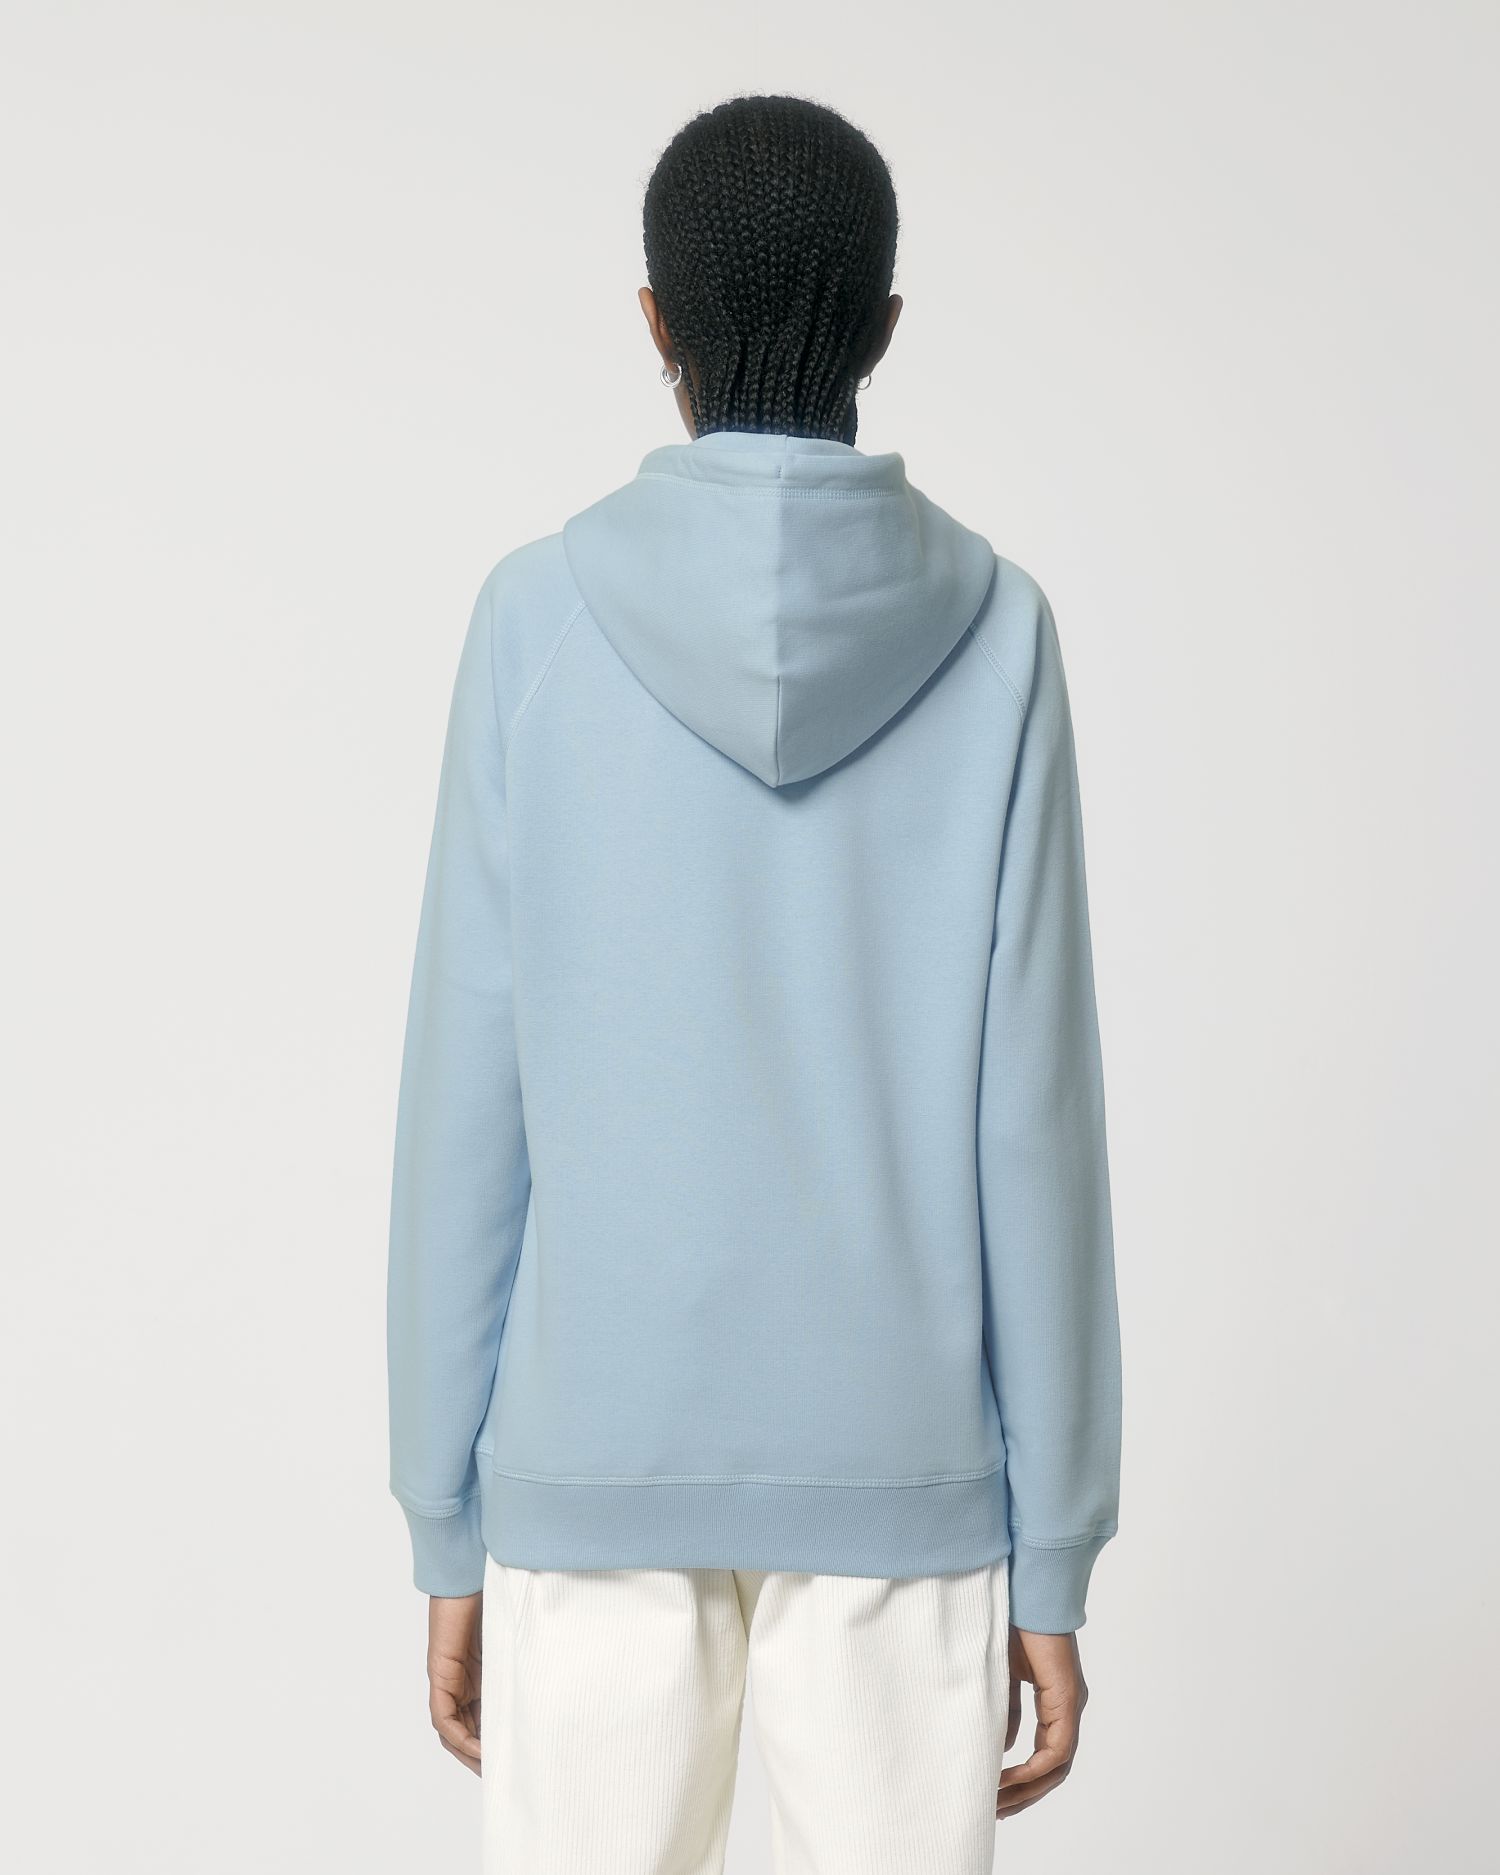 Hoodie sweatshirts Sider in Farbe Sky blue